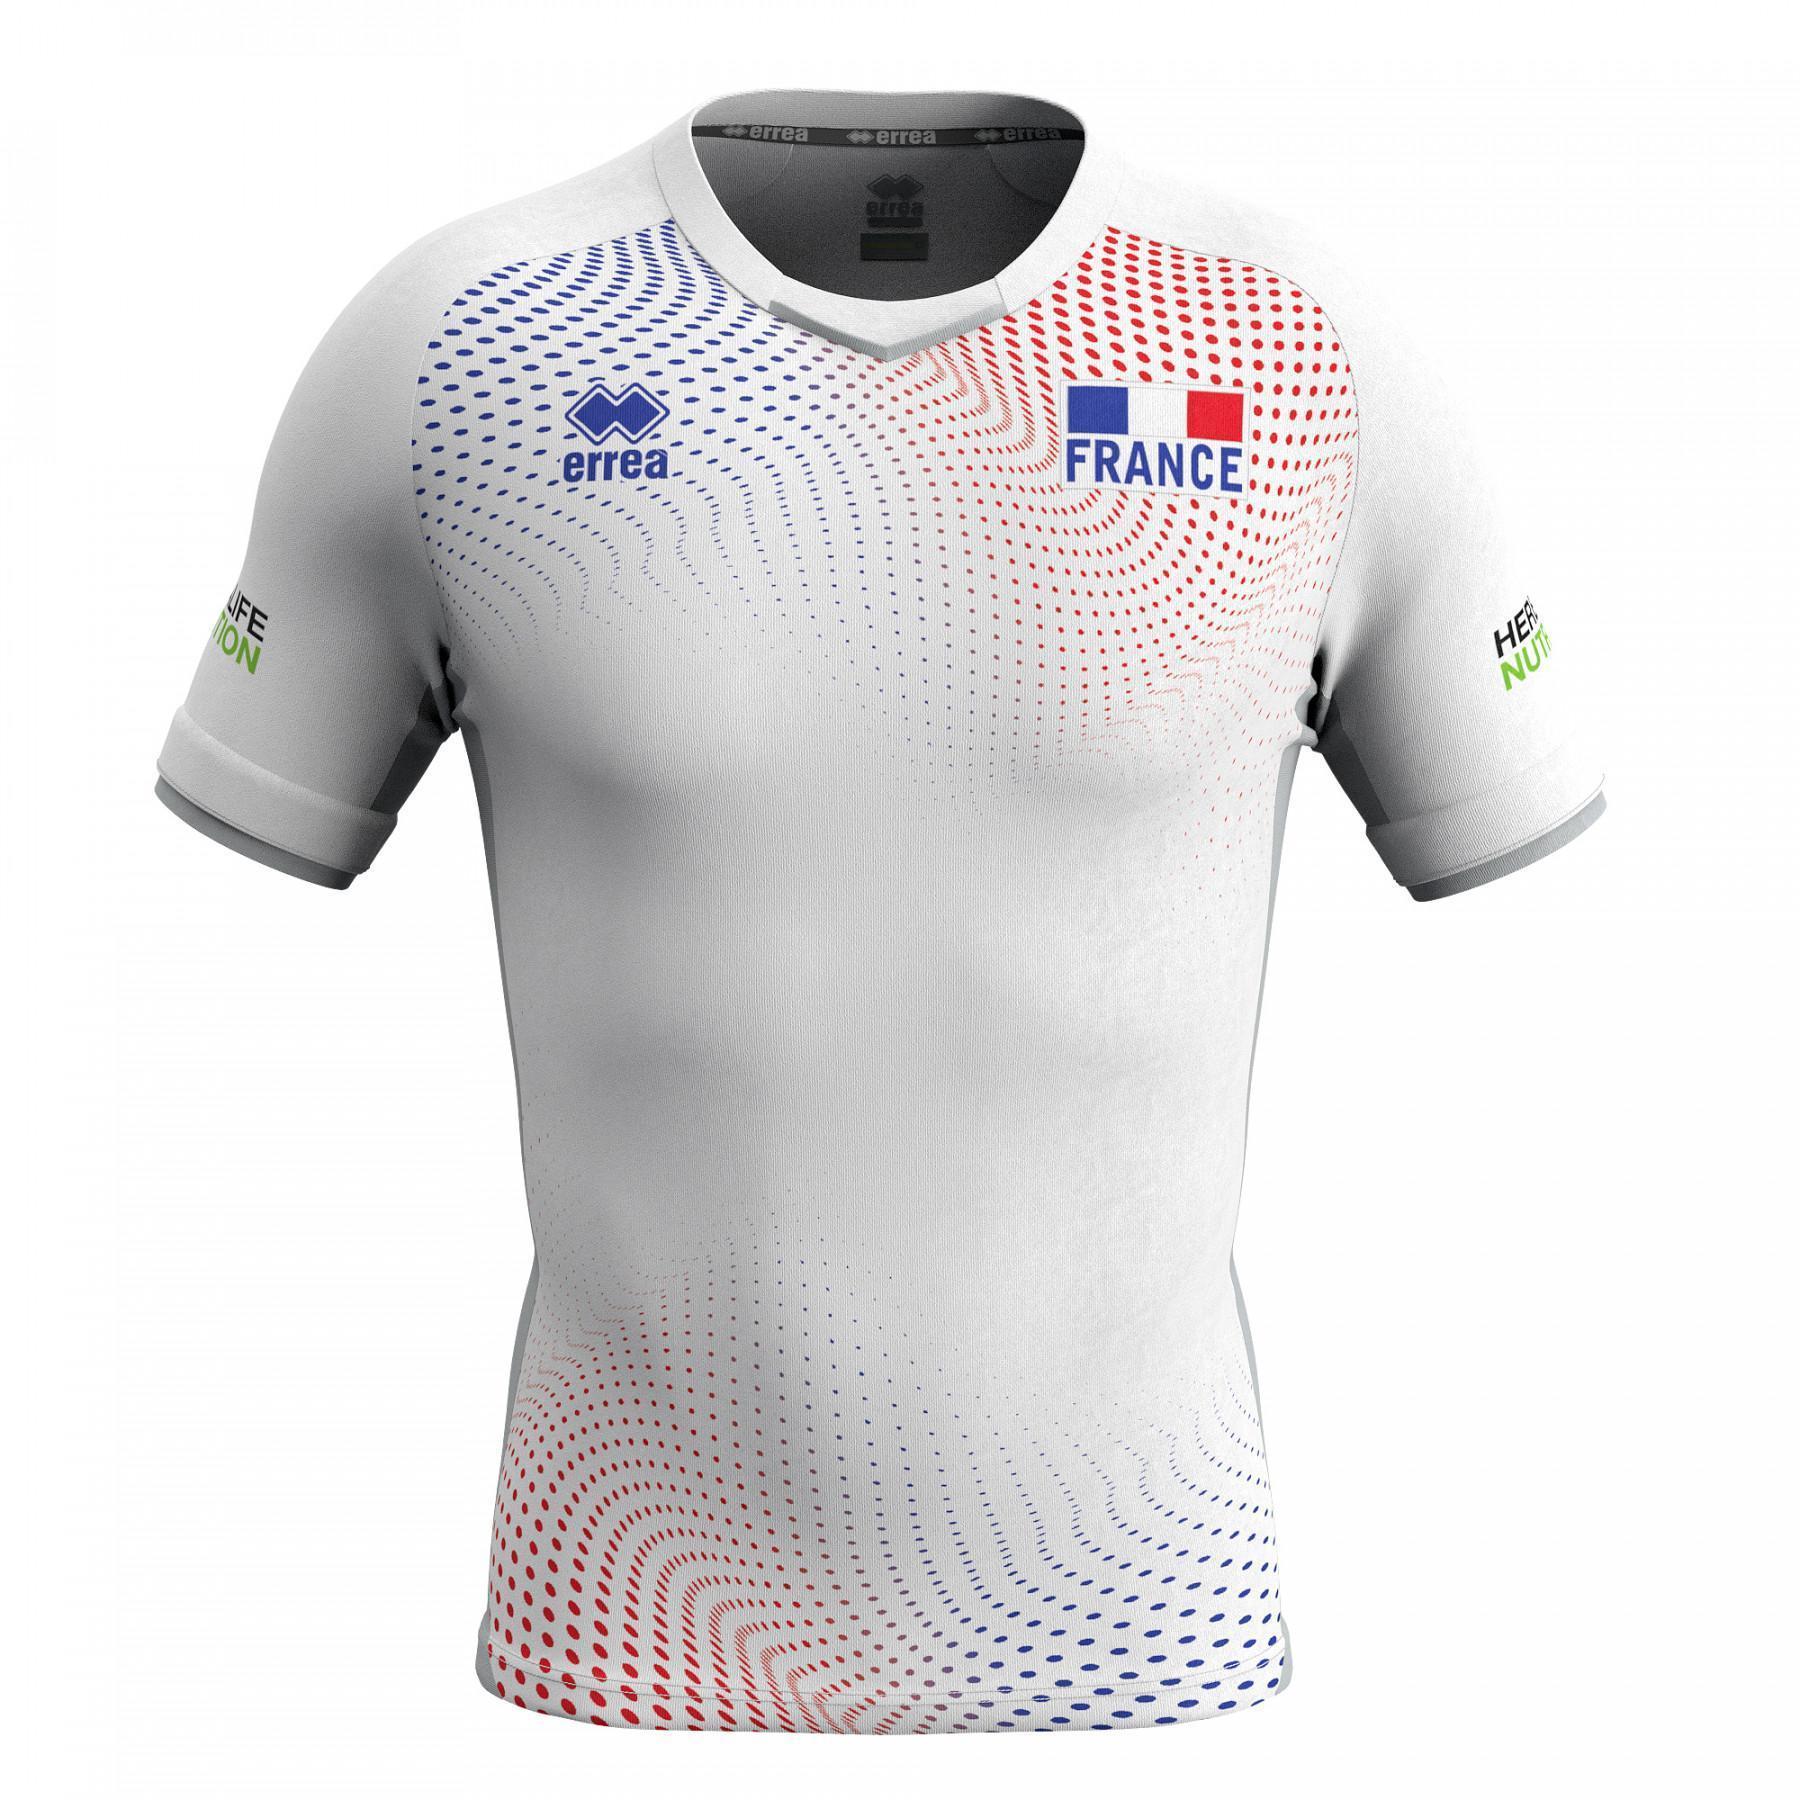 Koszulka outdoorowa z France 2020